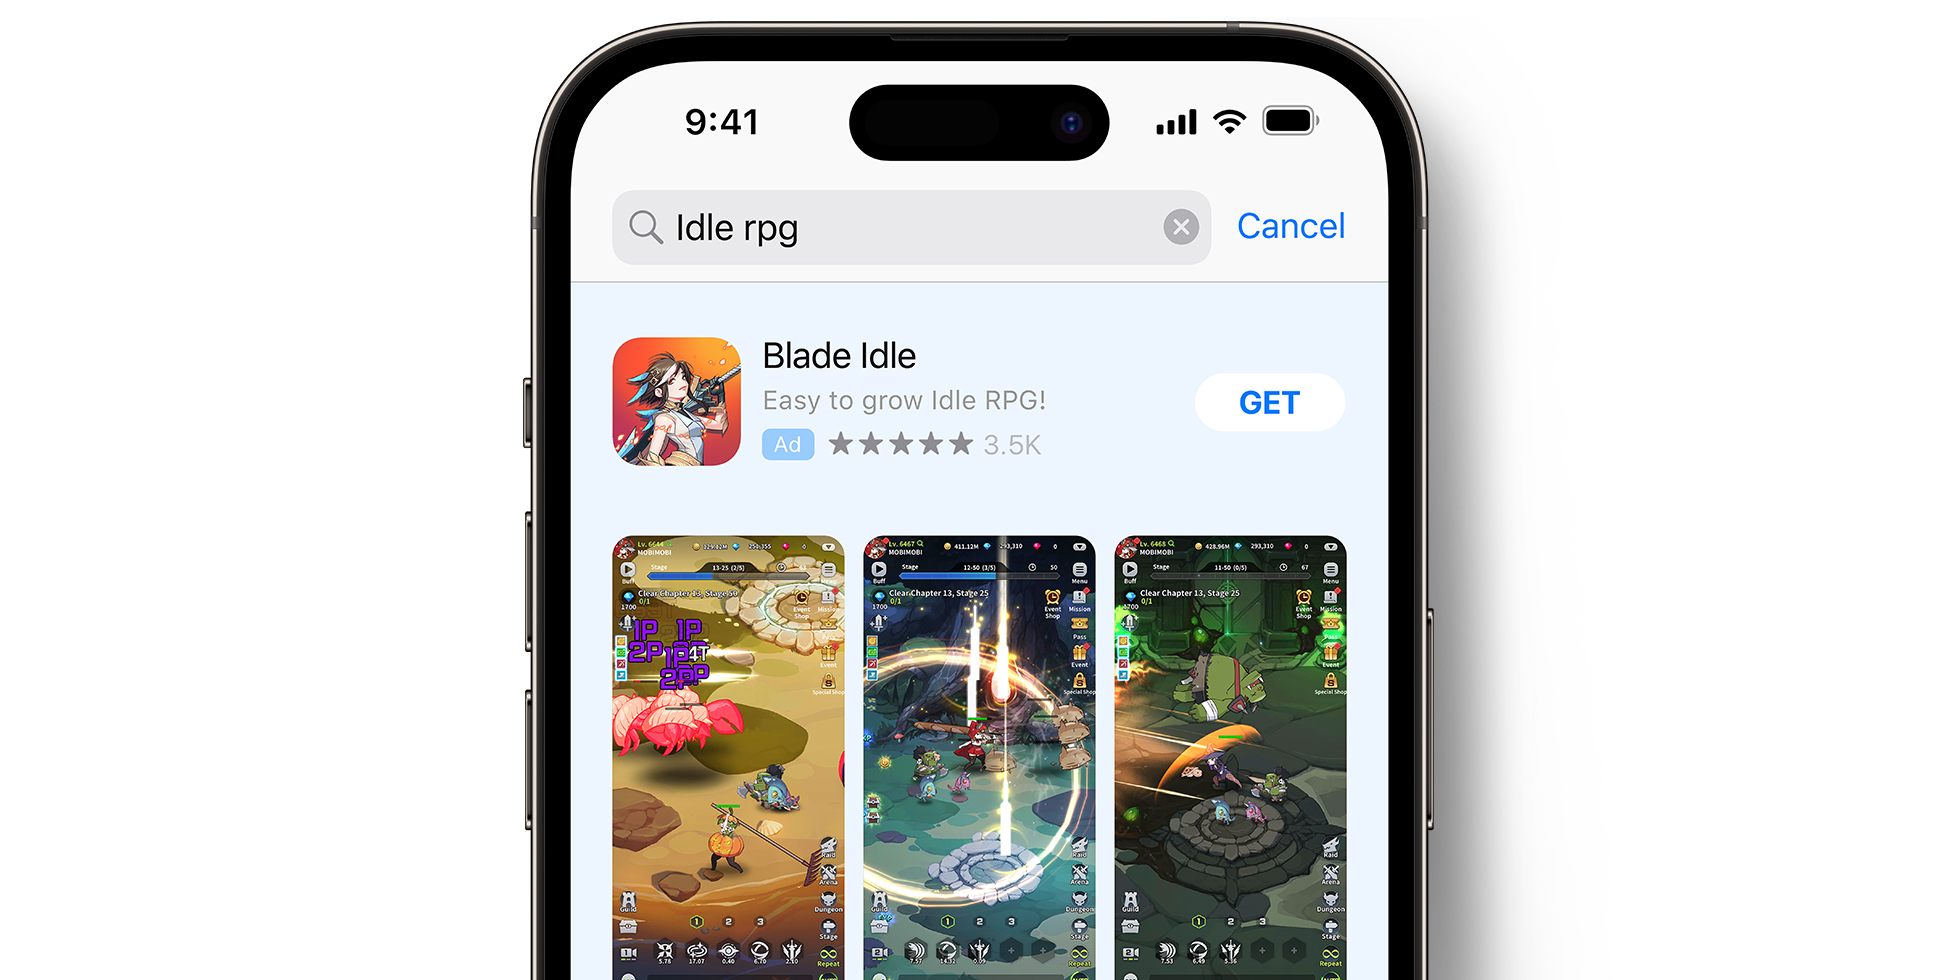 Annuncio pubblicitario di Blade Idle nell’App Store